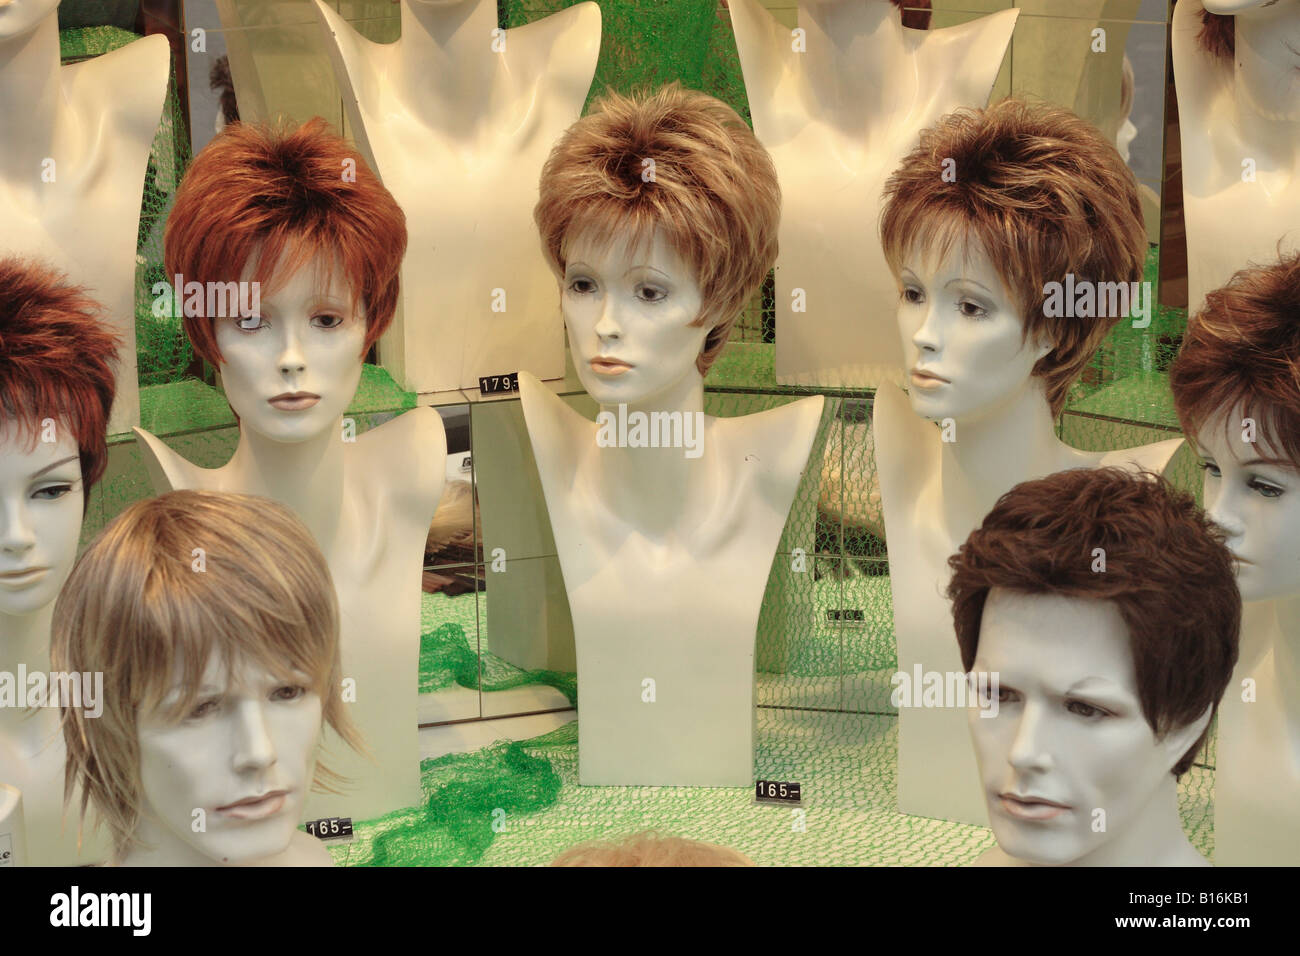 Perücke Schaufenster display Haarteile für Frauen und Männer  Stockfotografie - Alamy